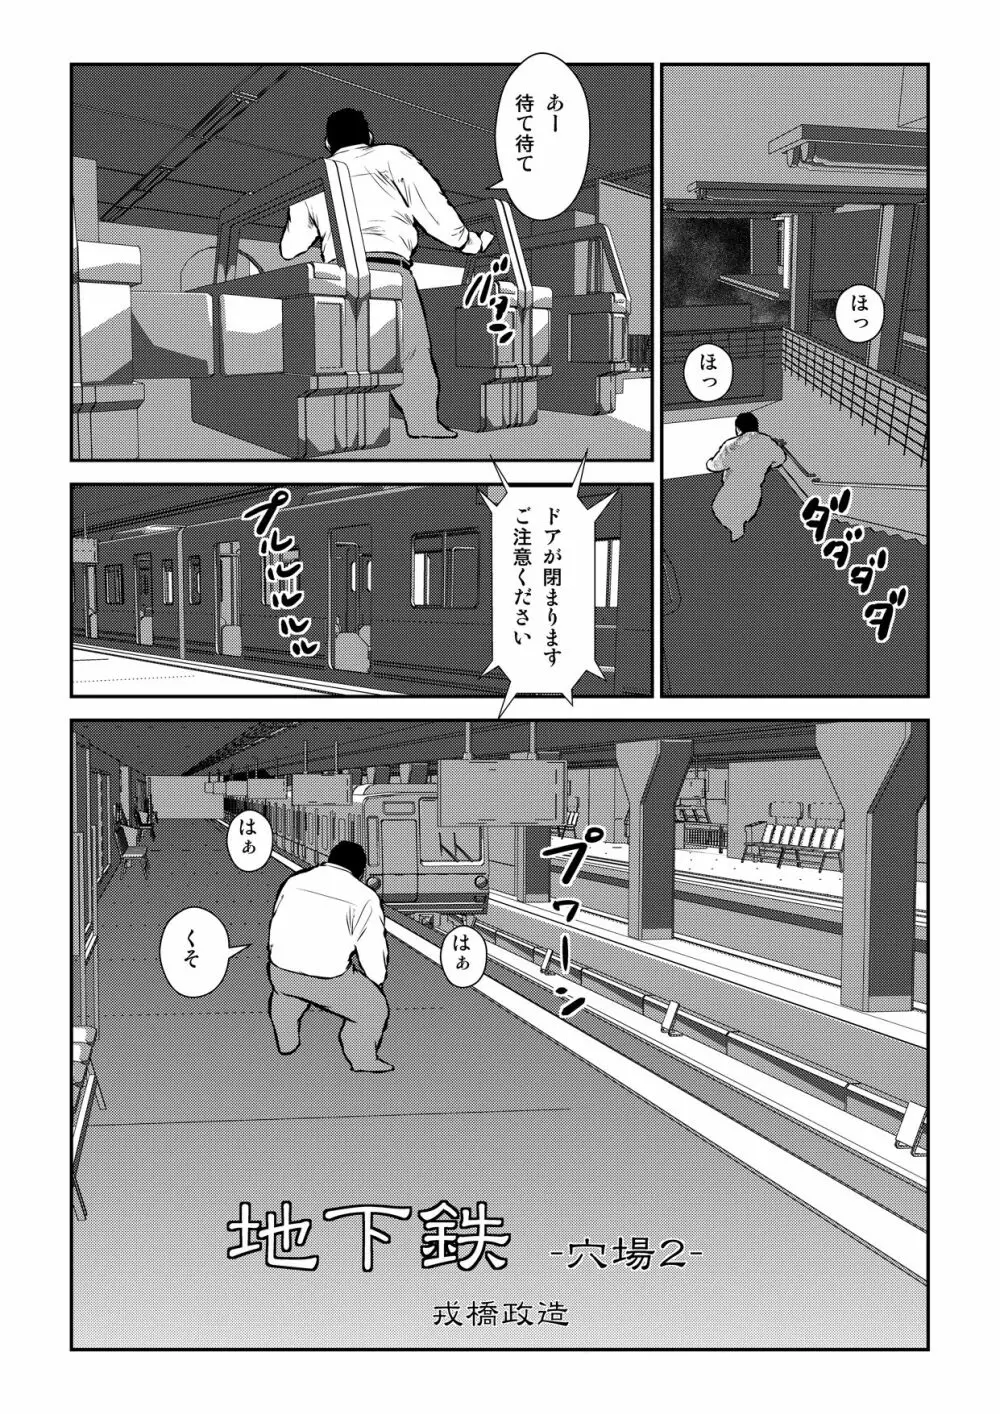 穴場2〜地下鉄〜